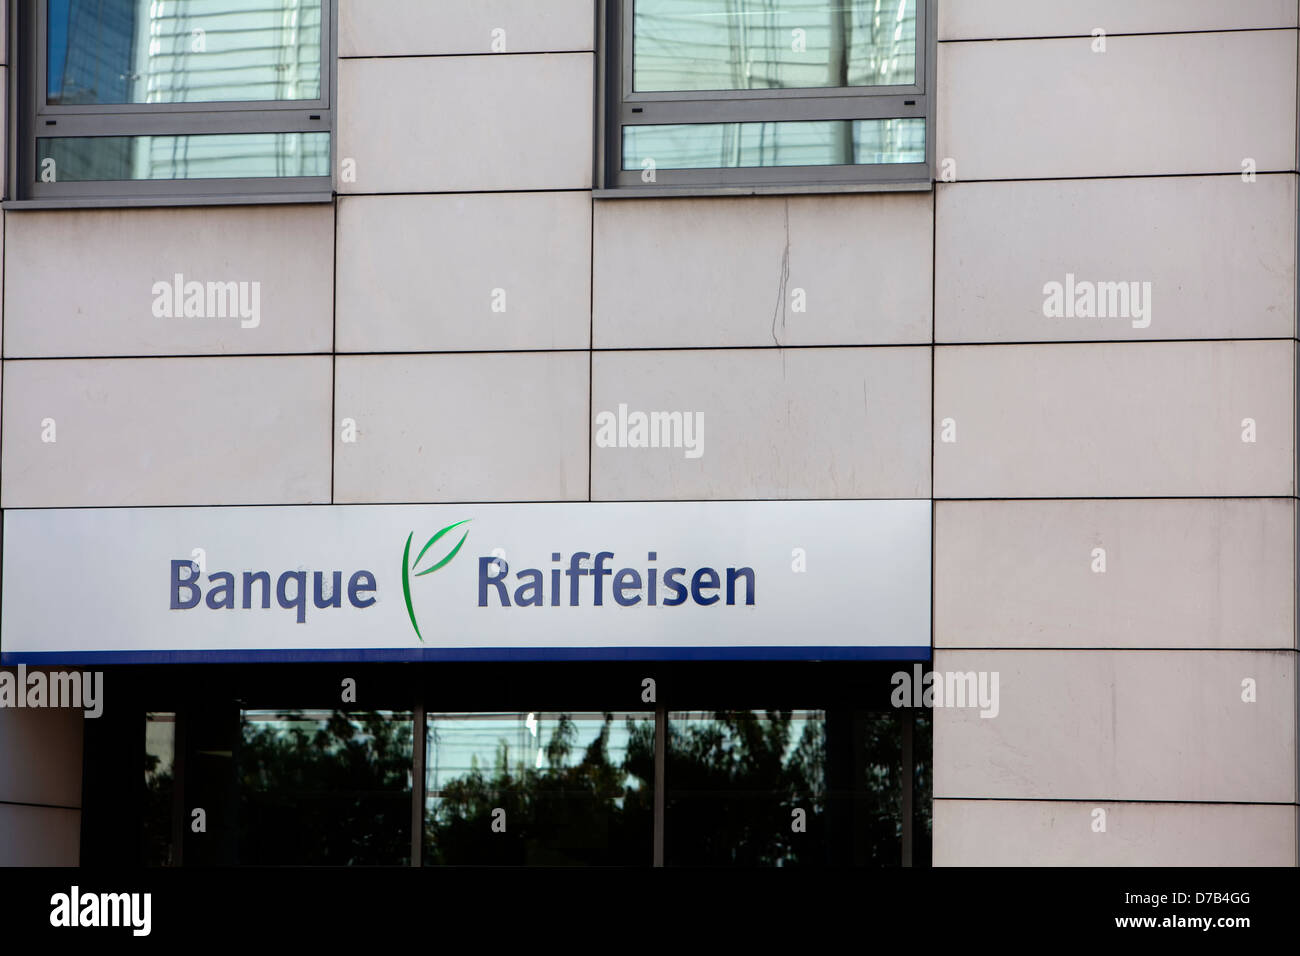 Bâtiment de la Banque Raiffeisen Bank, succursale de Luxembourg, Luxembourg, Europe Banque D'Images